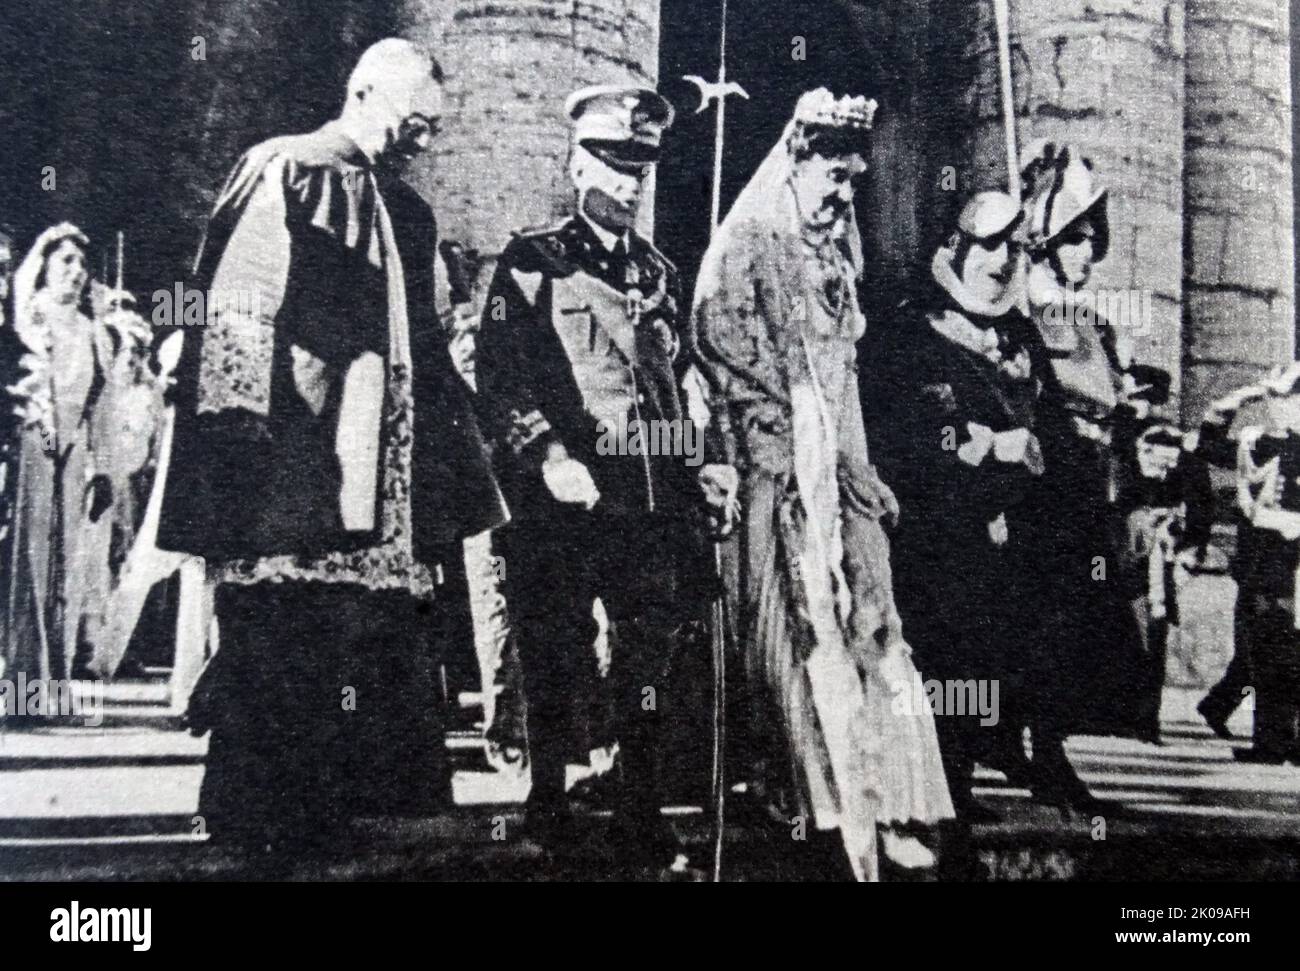 Victor Emmanuel III (Vittorio Emanuele Ferdinando Maria Gennaro di Savoia; 11 novembre 1869 - 28 décembre 1947) a régné comme Roi d'Italie du 29 juillet 1900 jusqu'à son abdication le 9 mai 1946. Il régna aussi comme empereur d'Ethiopie (1936-1941) et roi des Albanais (1939-1943). Pendant son règne de près de 46 ans, qui a commencé après l'assassinat de son père Umberto I, le Royaume d'Italie s'est impliqué dans deux guerres mondiales. Son règne couvrait aussi la naissance, la montée et la chute du fascisme italien et de son régime. Banque D'Images